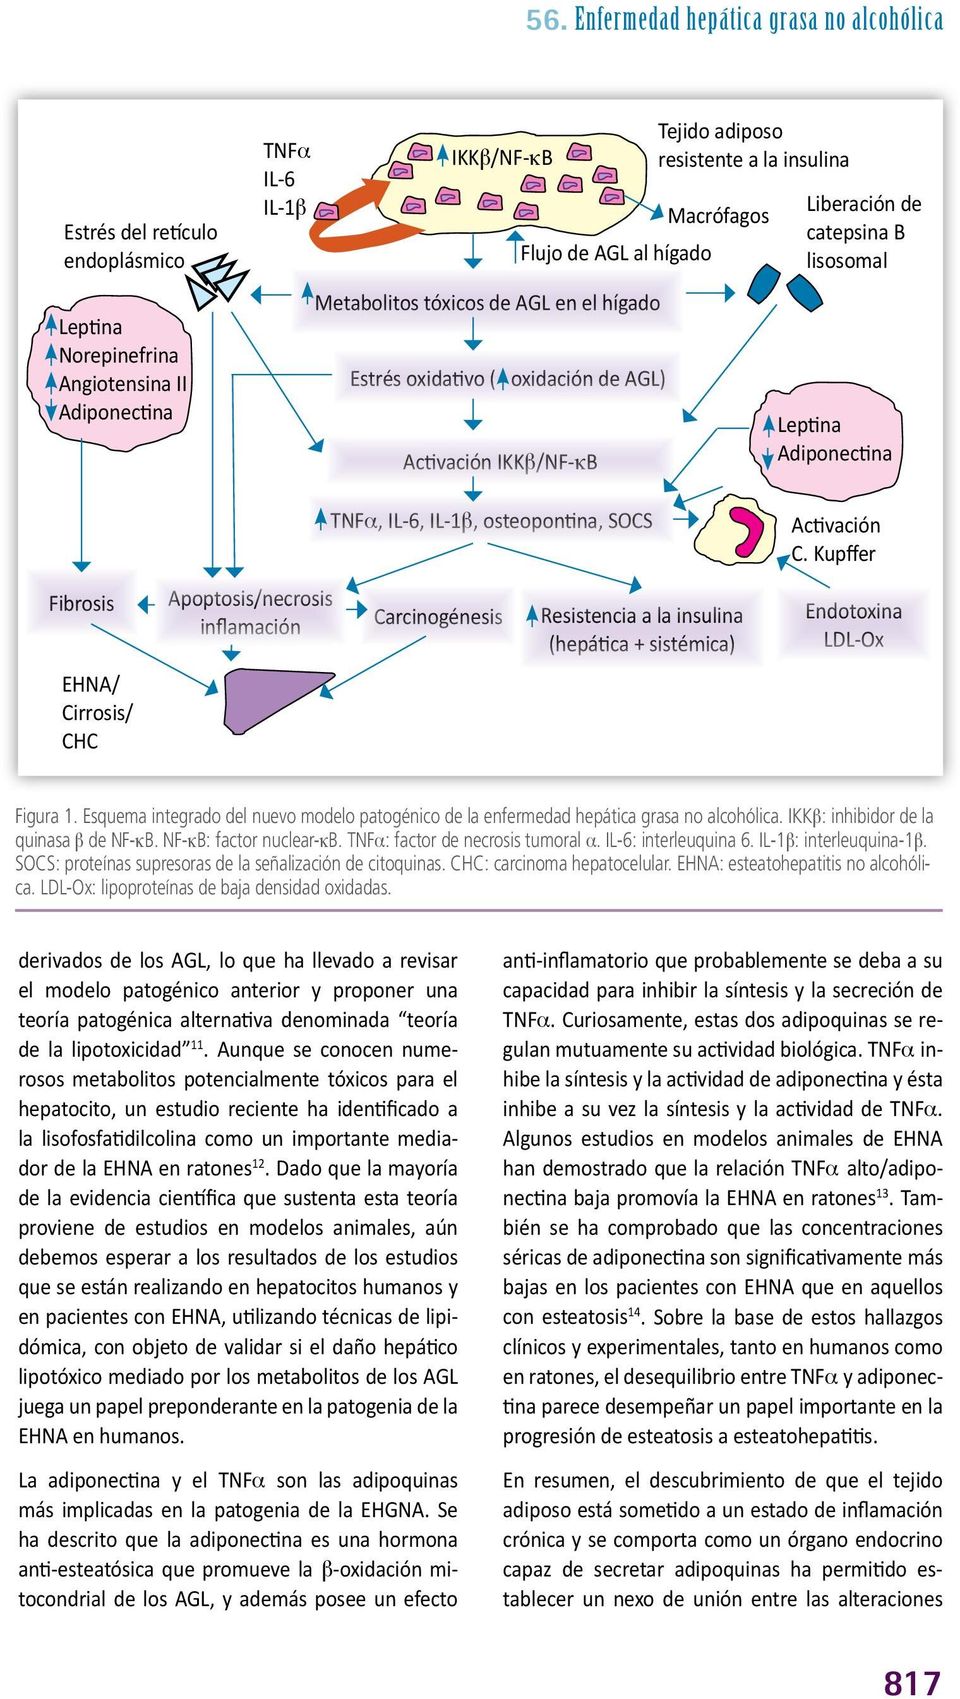 EHNA/ Cirrosis/ CHC Apoptosis/necrosis inflamación TNFa, IL-6, IL-1b, osteopontina, SOCS Carcinogénesis Resistencia a la insulina (hepática + sistémica) Activación C.